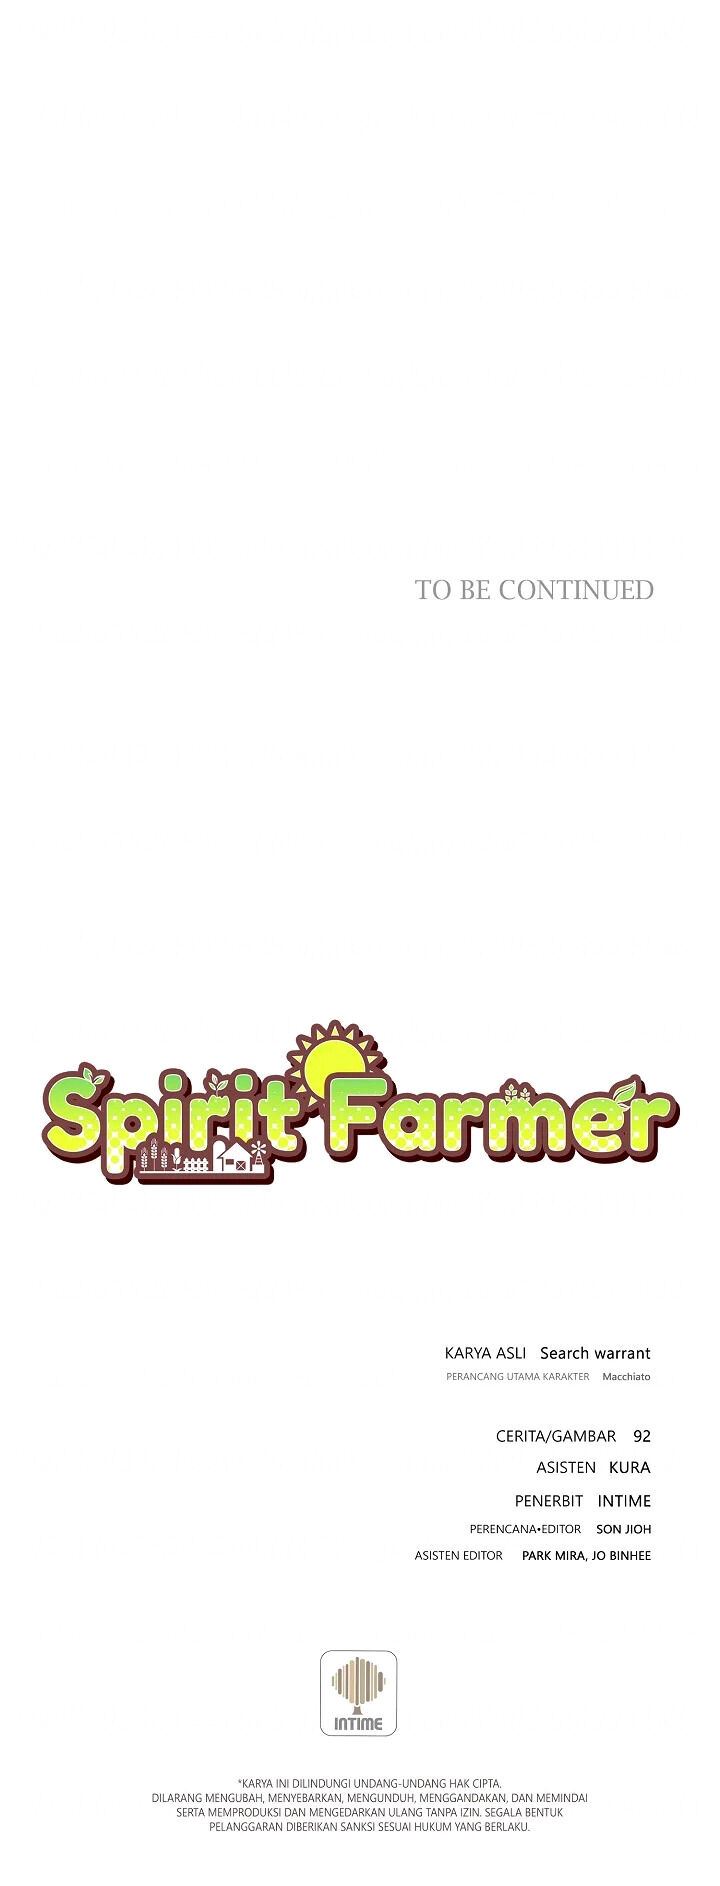 Spirit Farmer Chapter 64